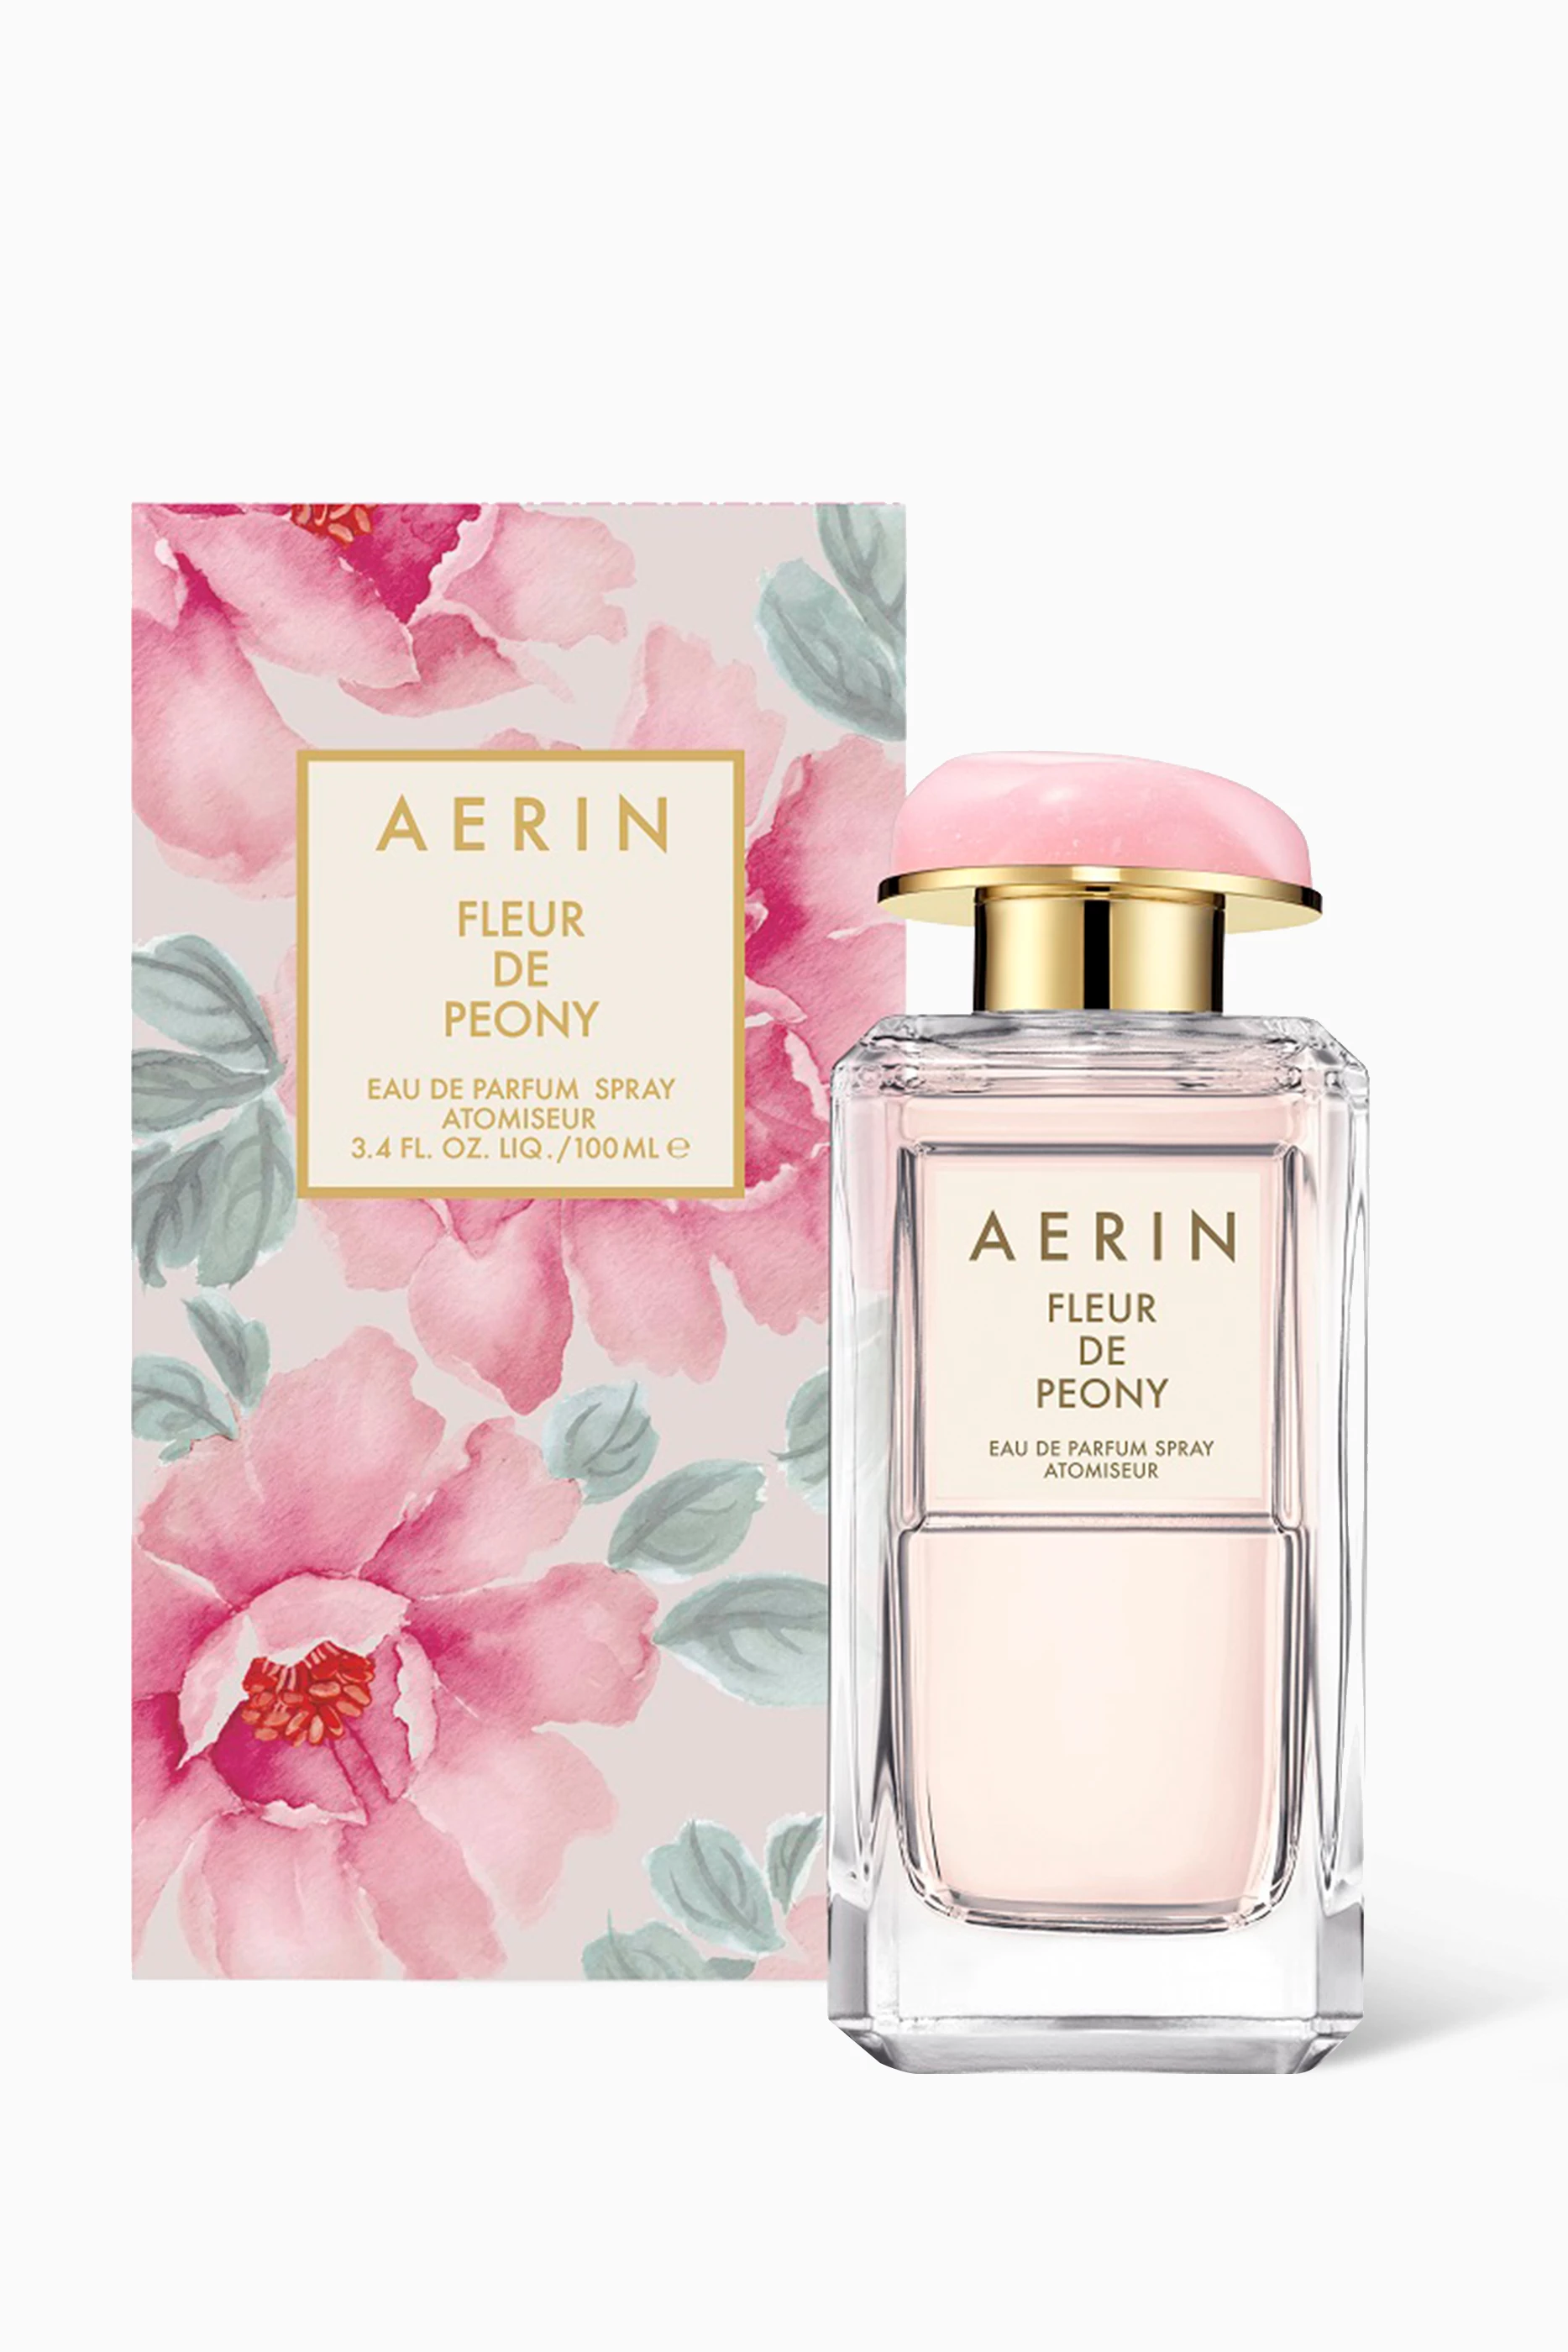 AERIN Fleur de Peony Eau de Parfum